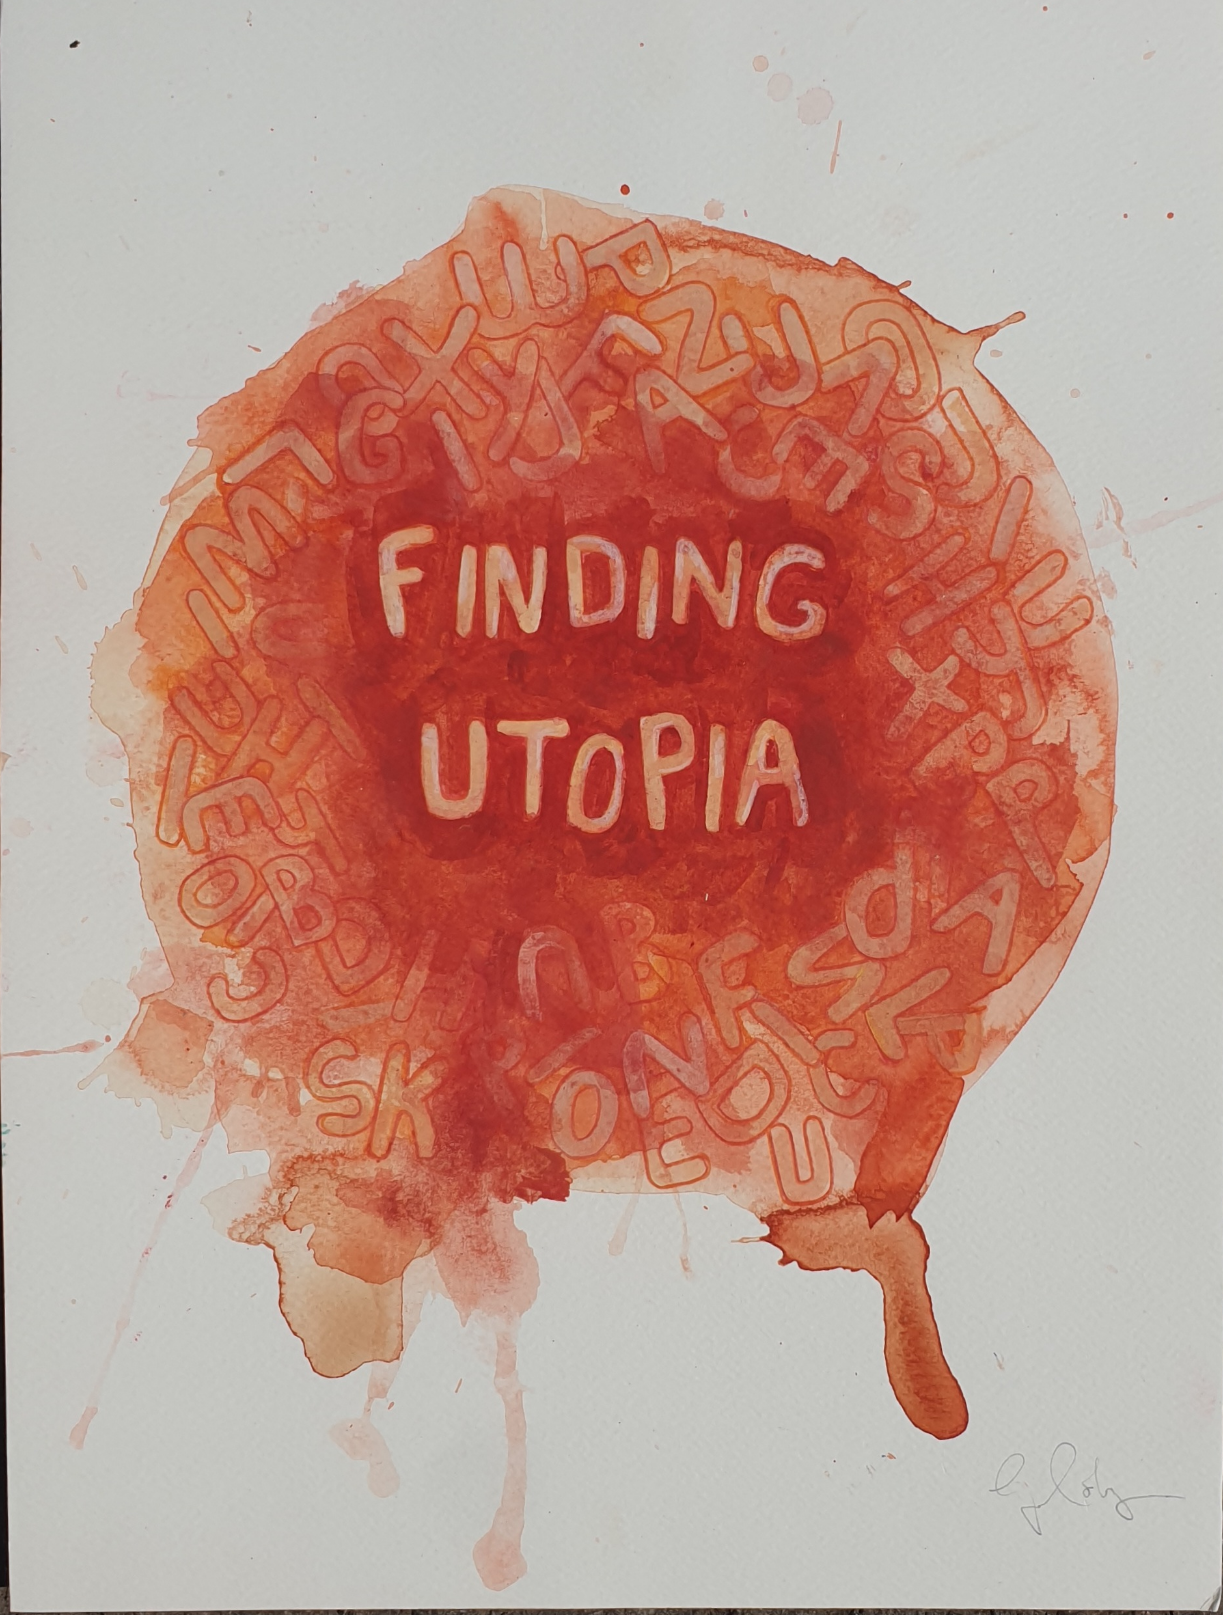 Original artwork for Finding utopia